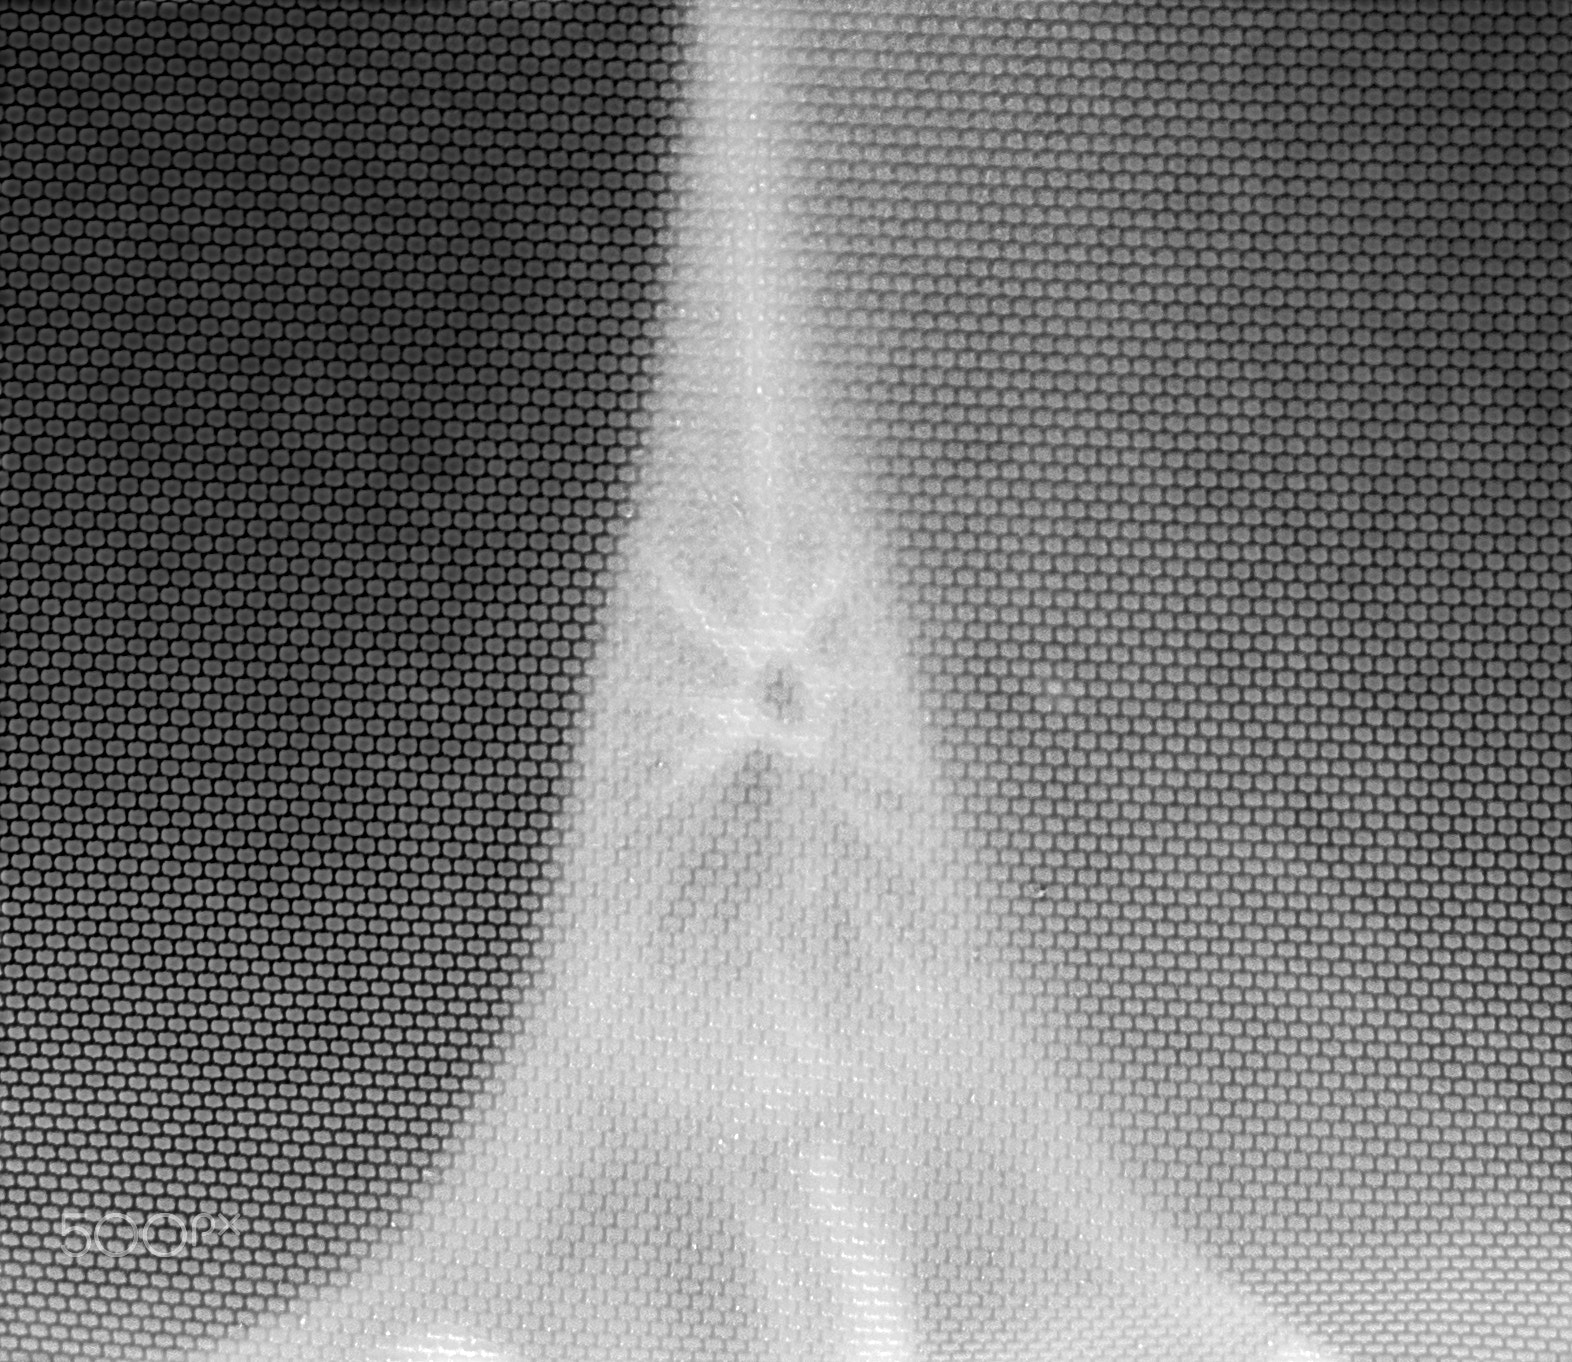 Pentax smc FA 50mm F1.4 sample photo. Supernova photography